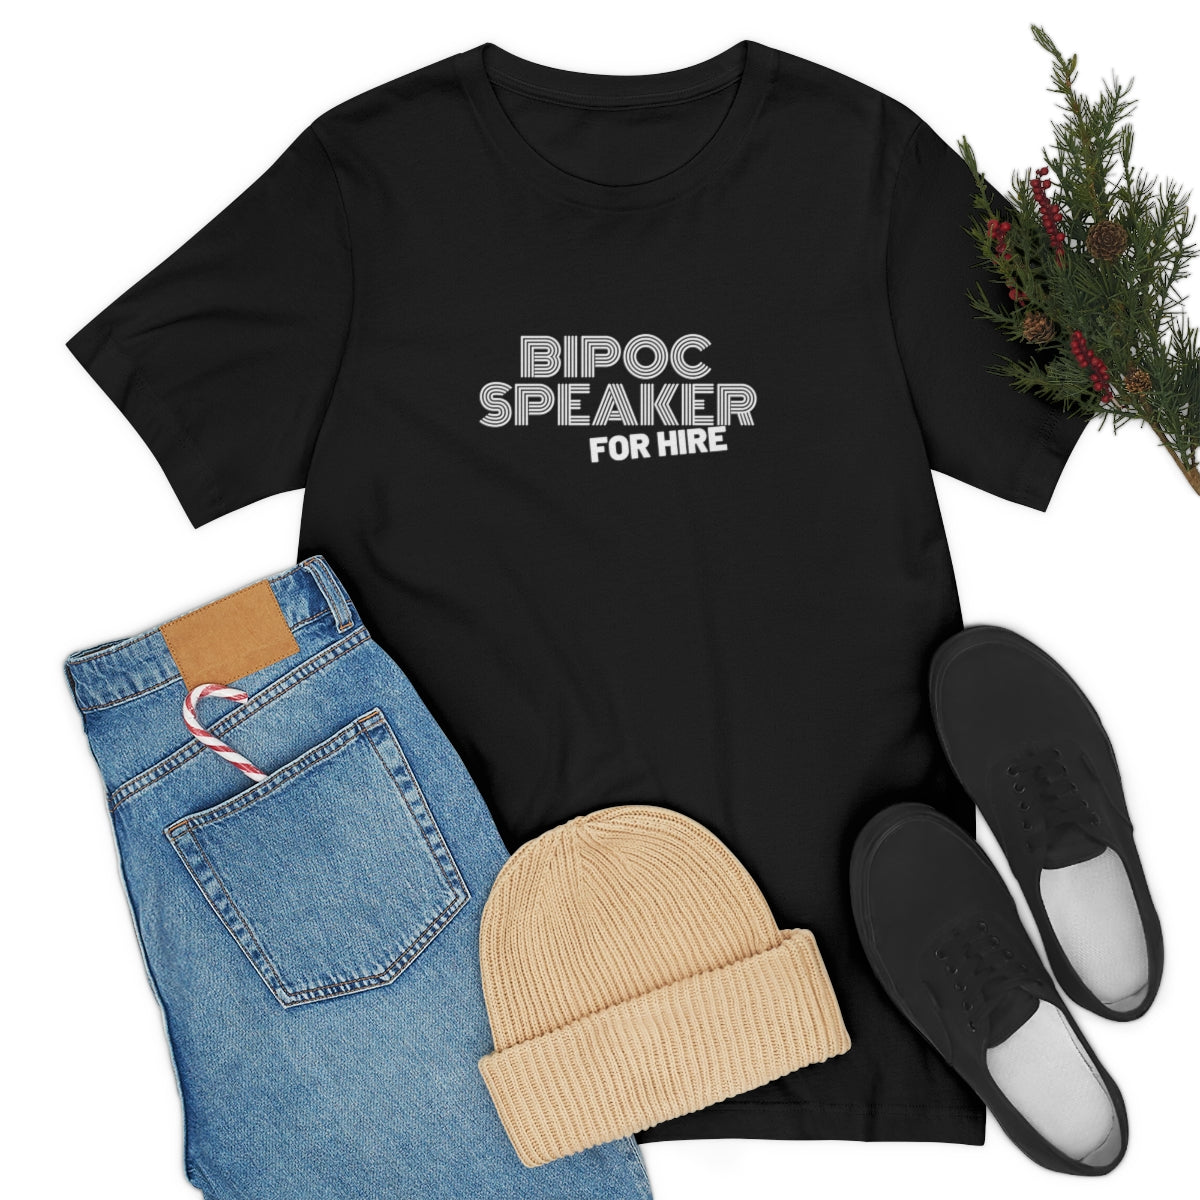 Bipoc Speaker For Hire Shirt Black Women Speakers, Latina Women Speakers, Asian Women Speaker, Indigenous Women, Speaker Shirt